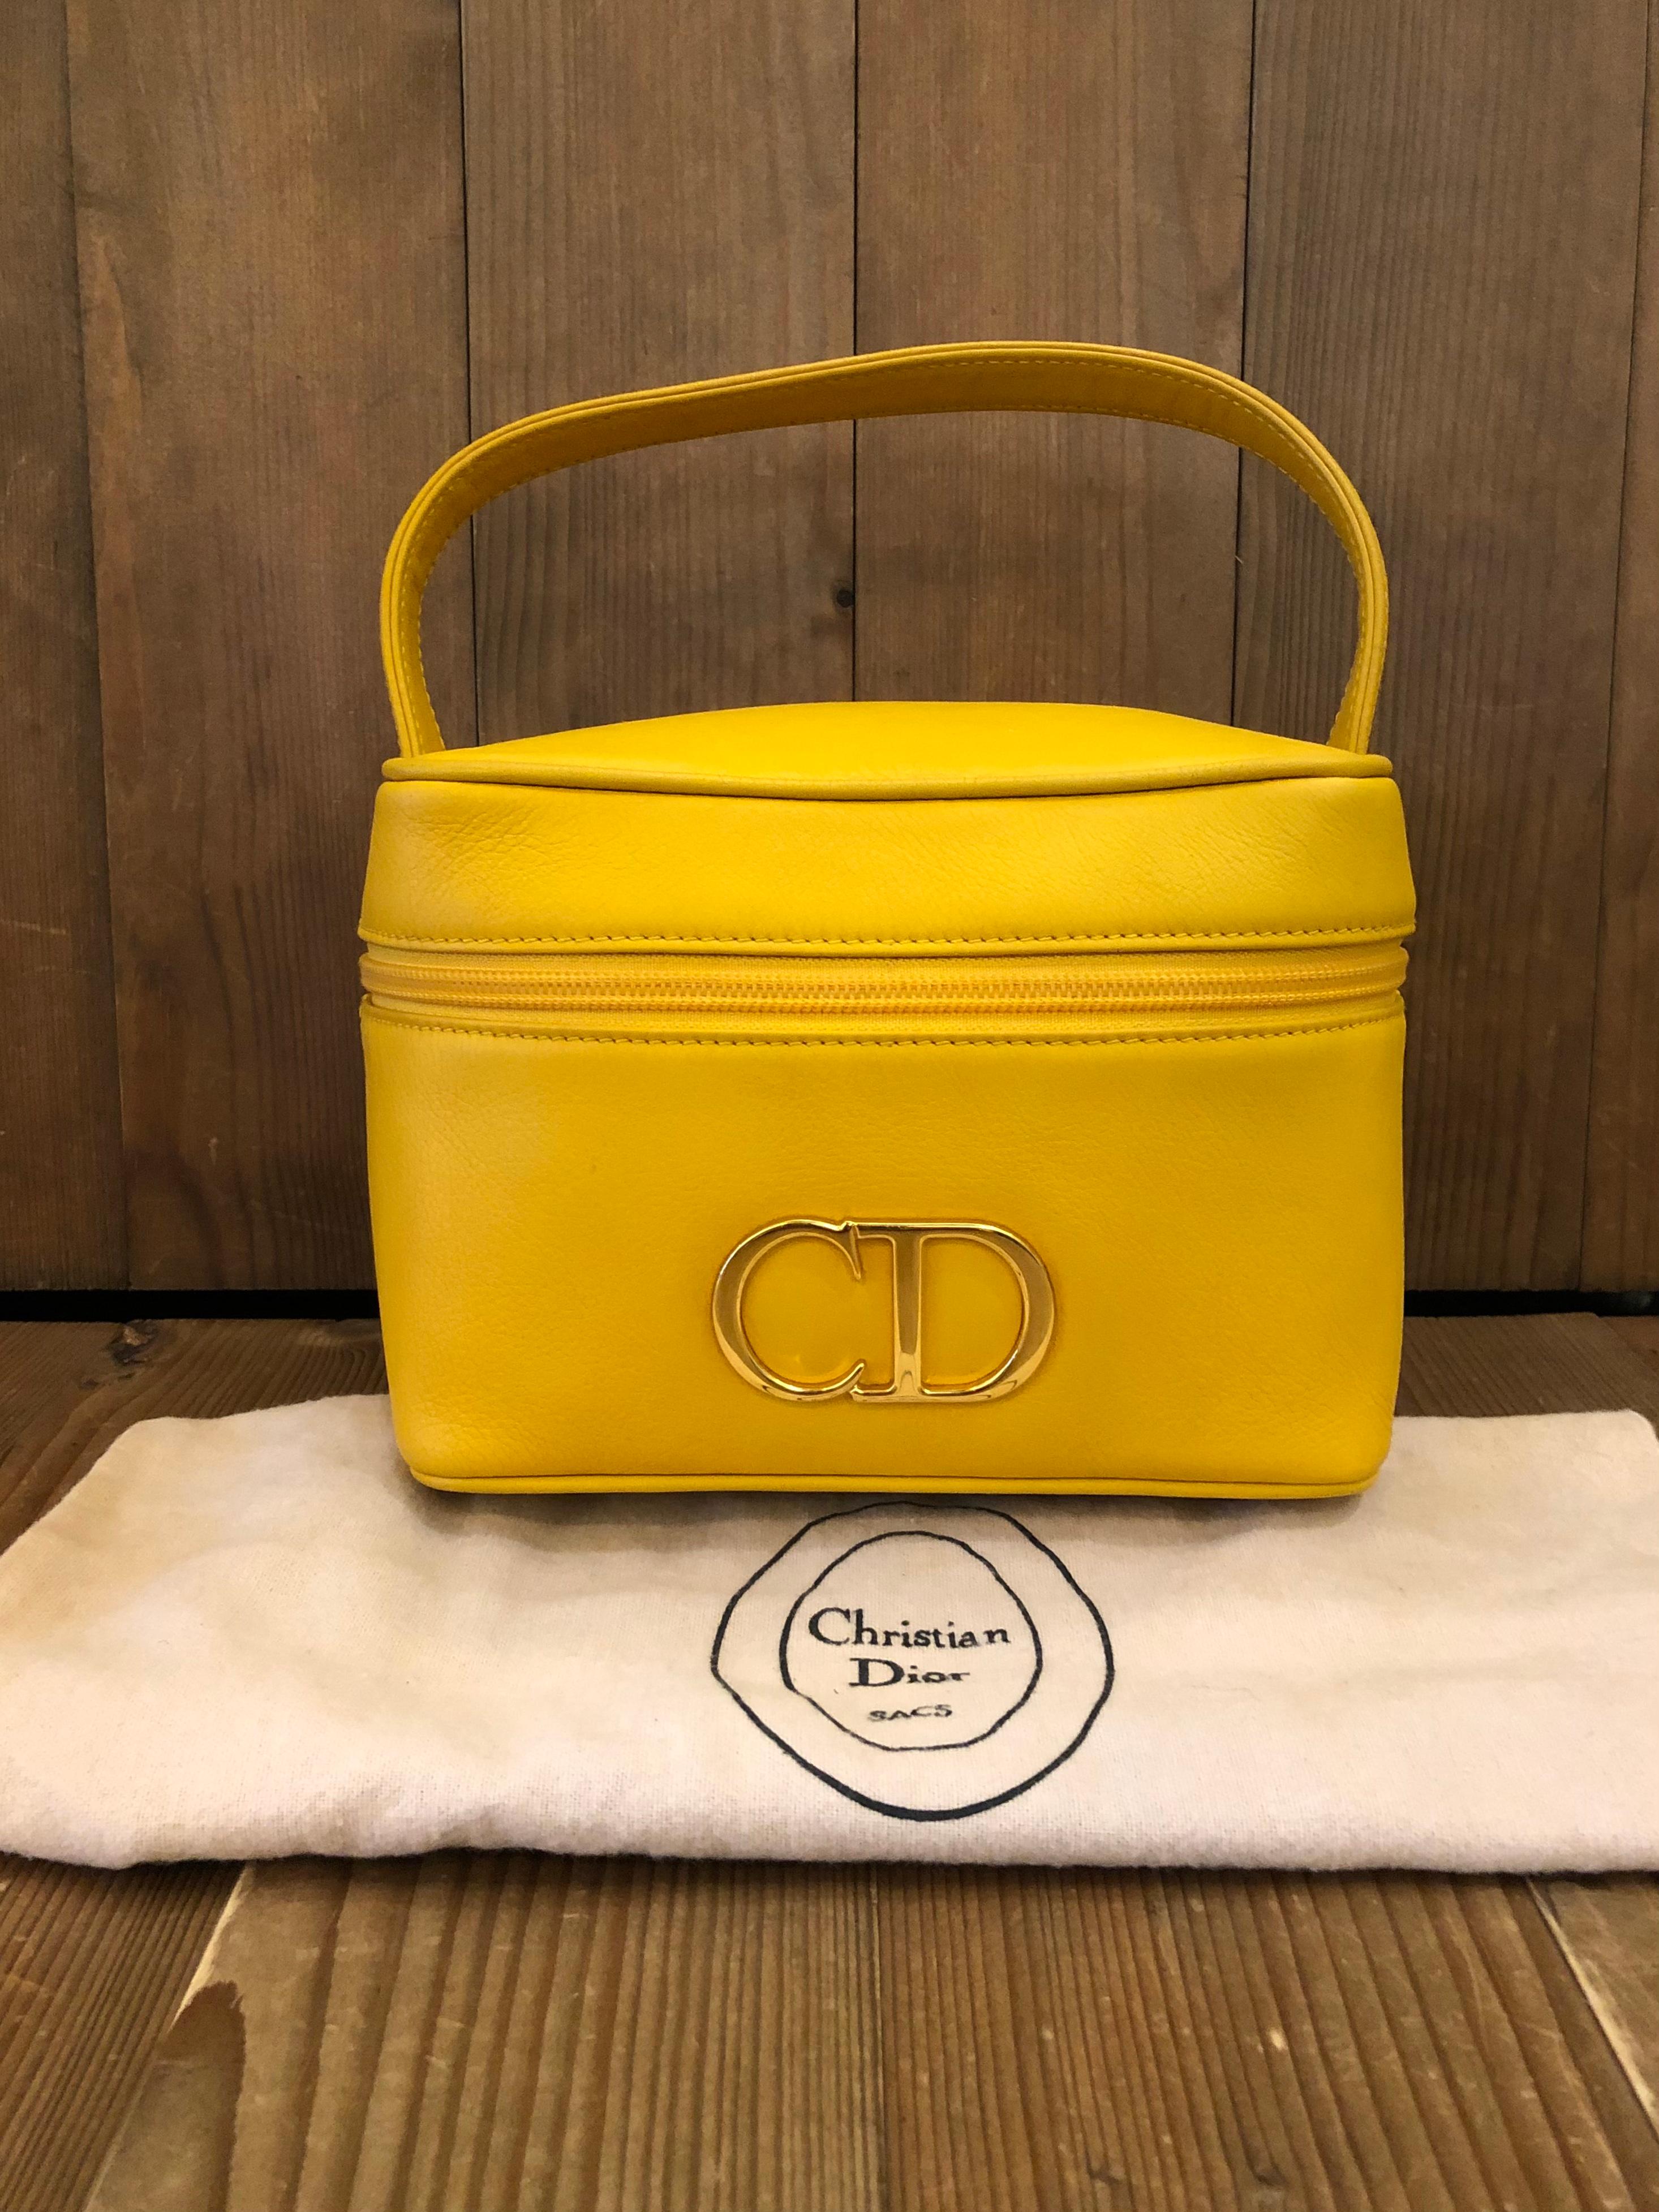 Diese Vintage-Handtasche von CHRISTIAN DIOR ist aus leuchtend gelbem Leder gefertigt und mit einem übergroßen, goldfarbenen CD-Logo verziert. Der Reißverschluss öffnet sich zu einem Innenraum aus schwarzem Leder. Perfekt für die Aufbewahrung von